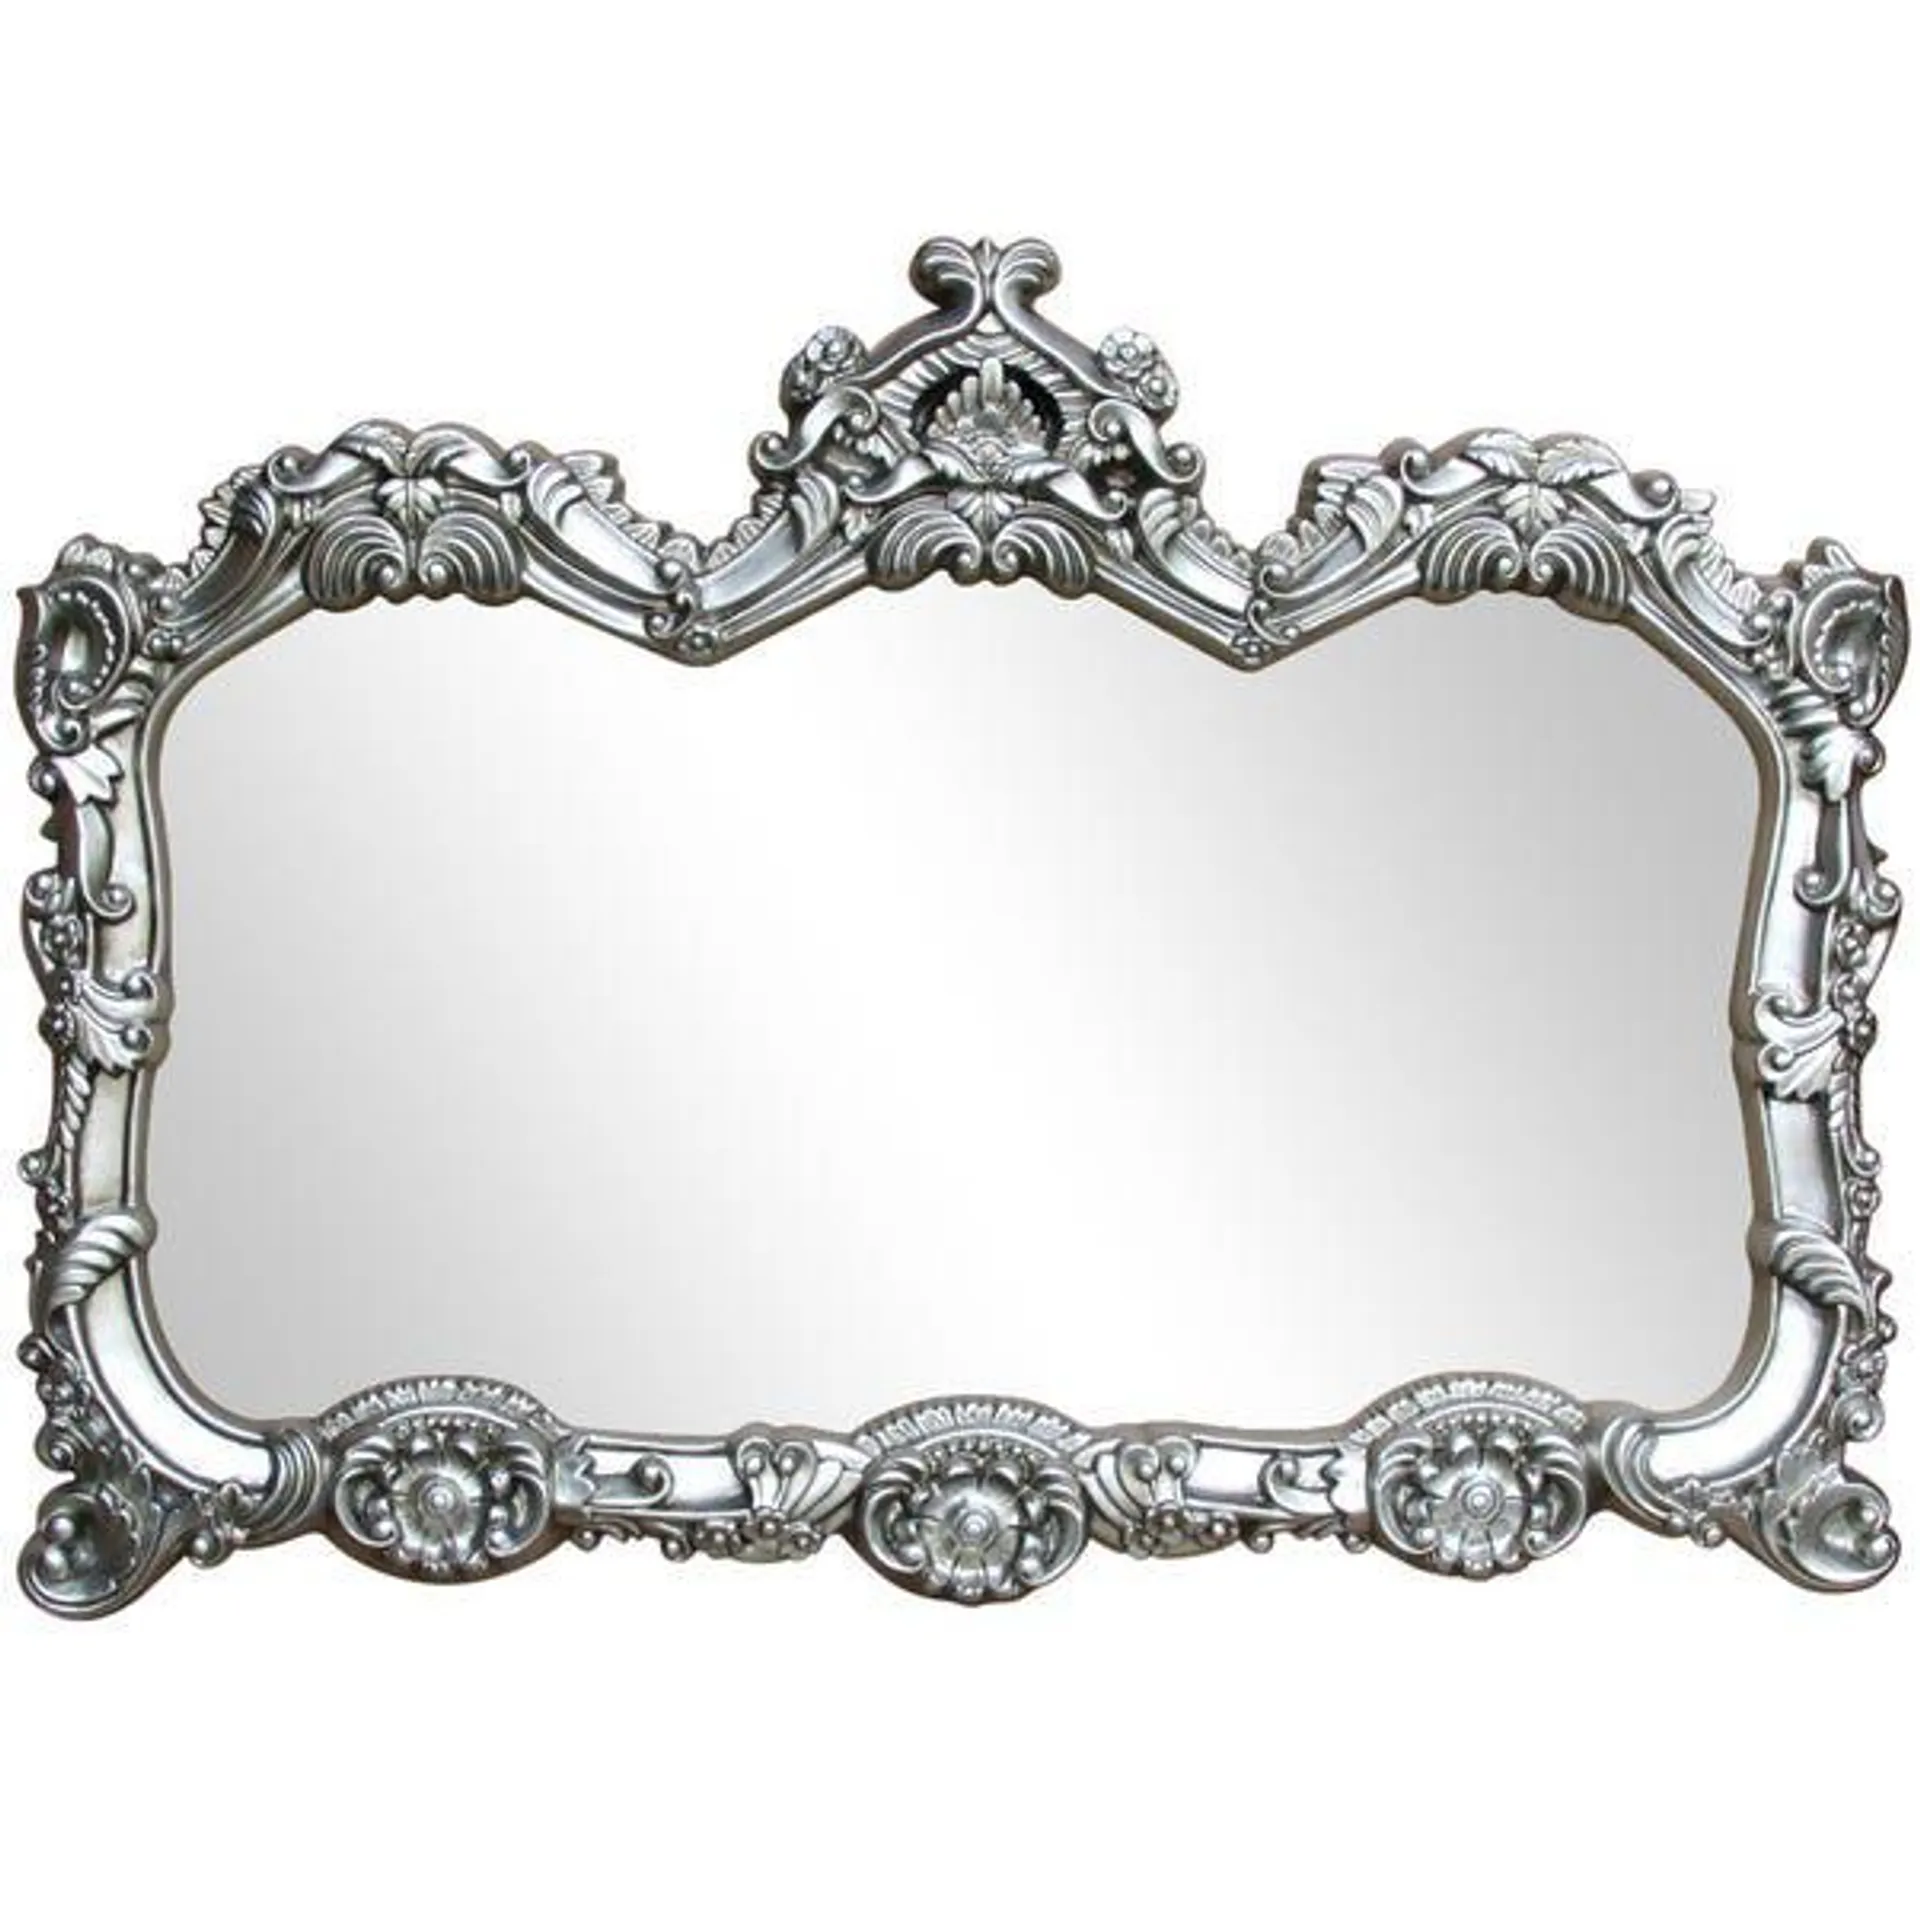 Ormolu Ornate Wall Mirror, Silver 85x117cm